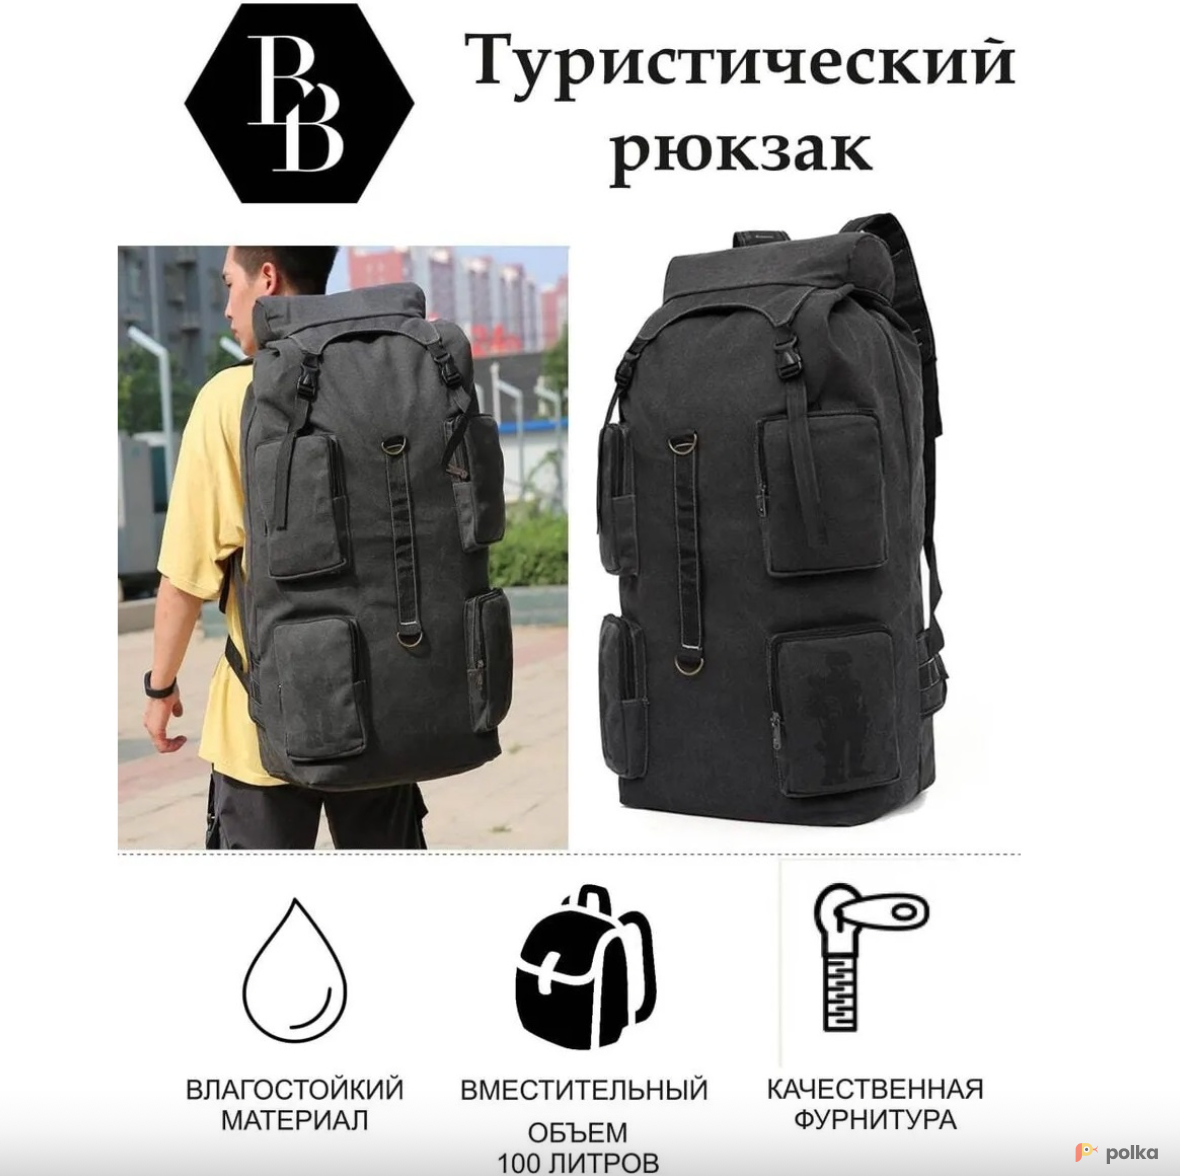 Возьмите Рюкзак туристический 100 литров напрокат (Фото 2) В Новосибирске